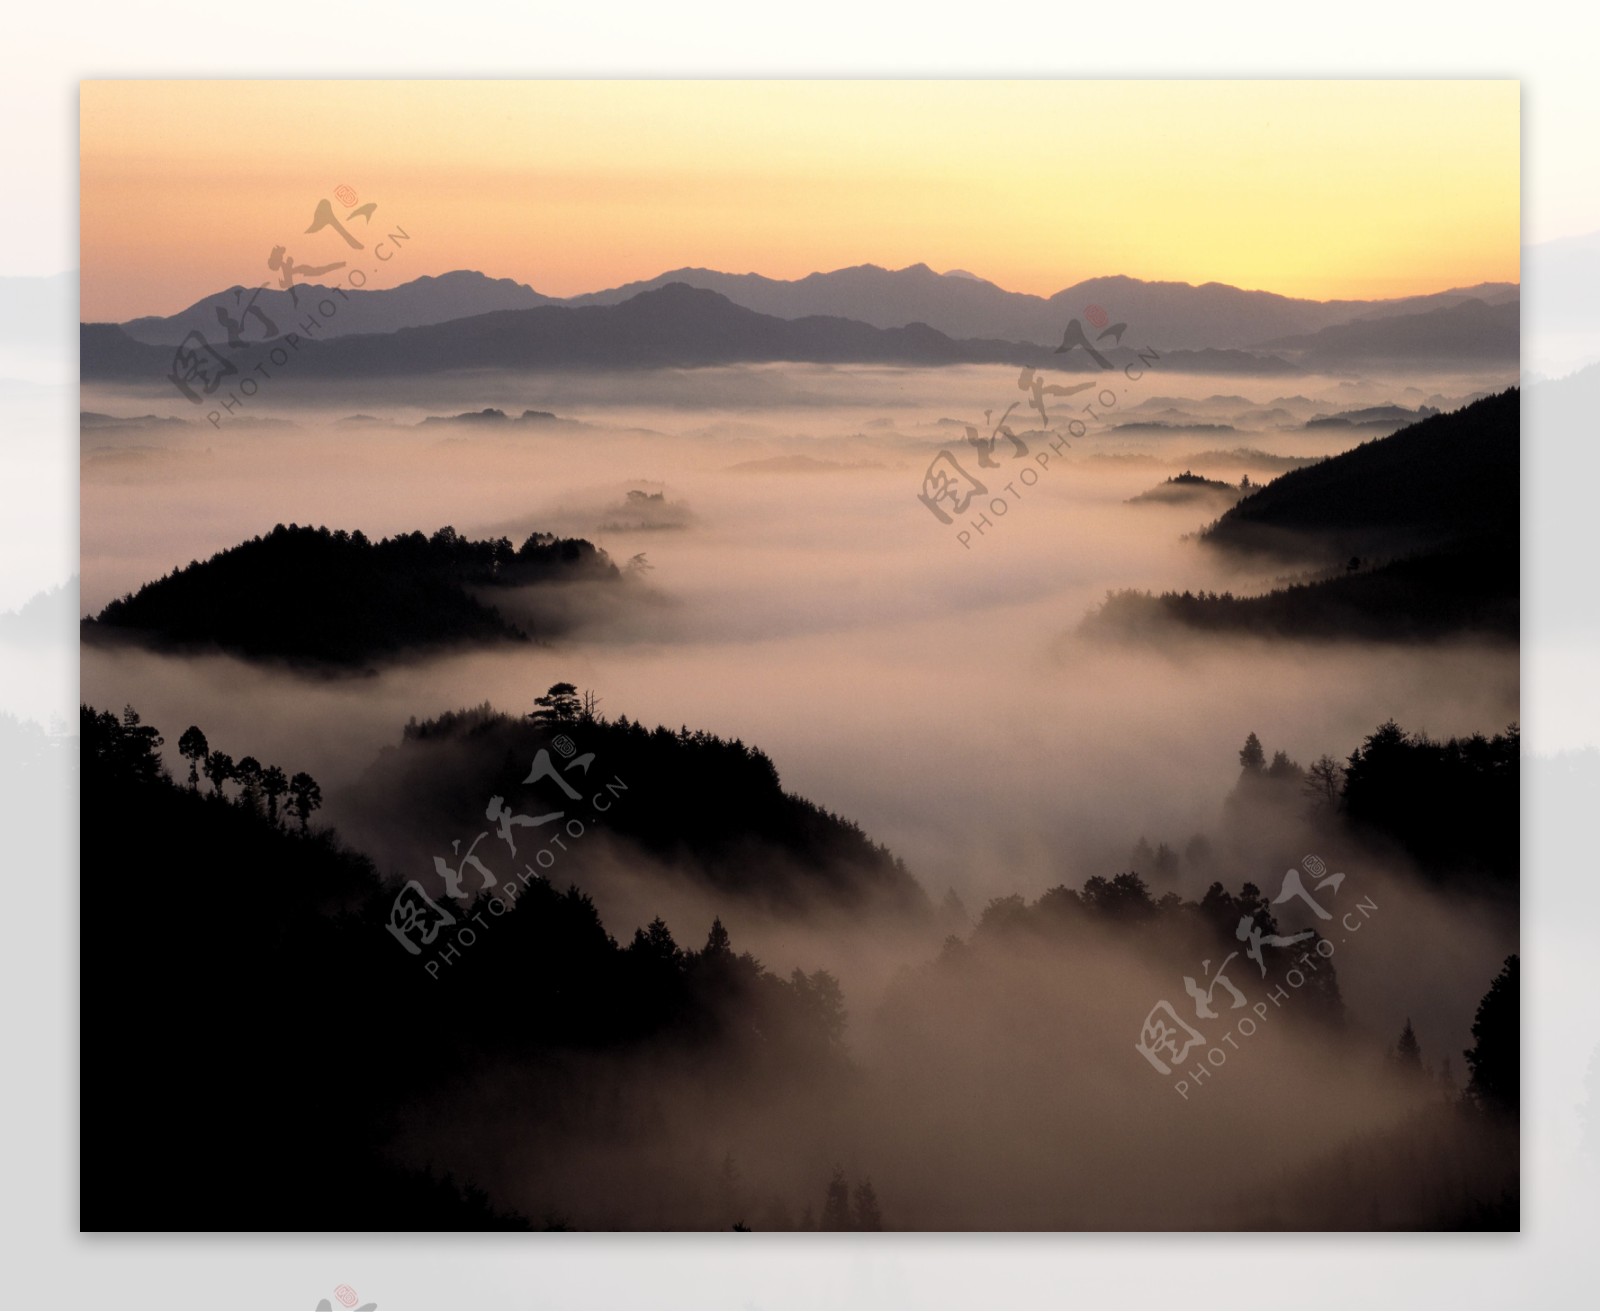 云雾似仙境的山峰风景图